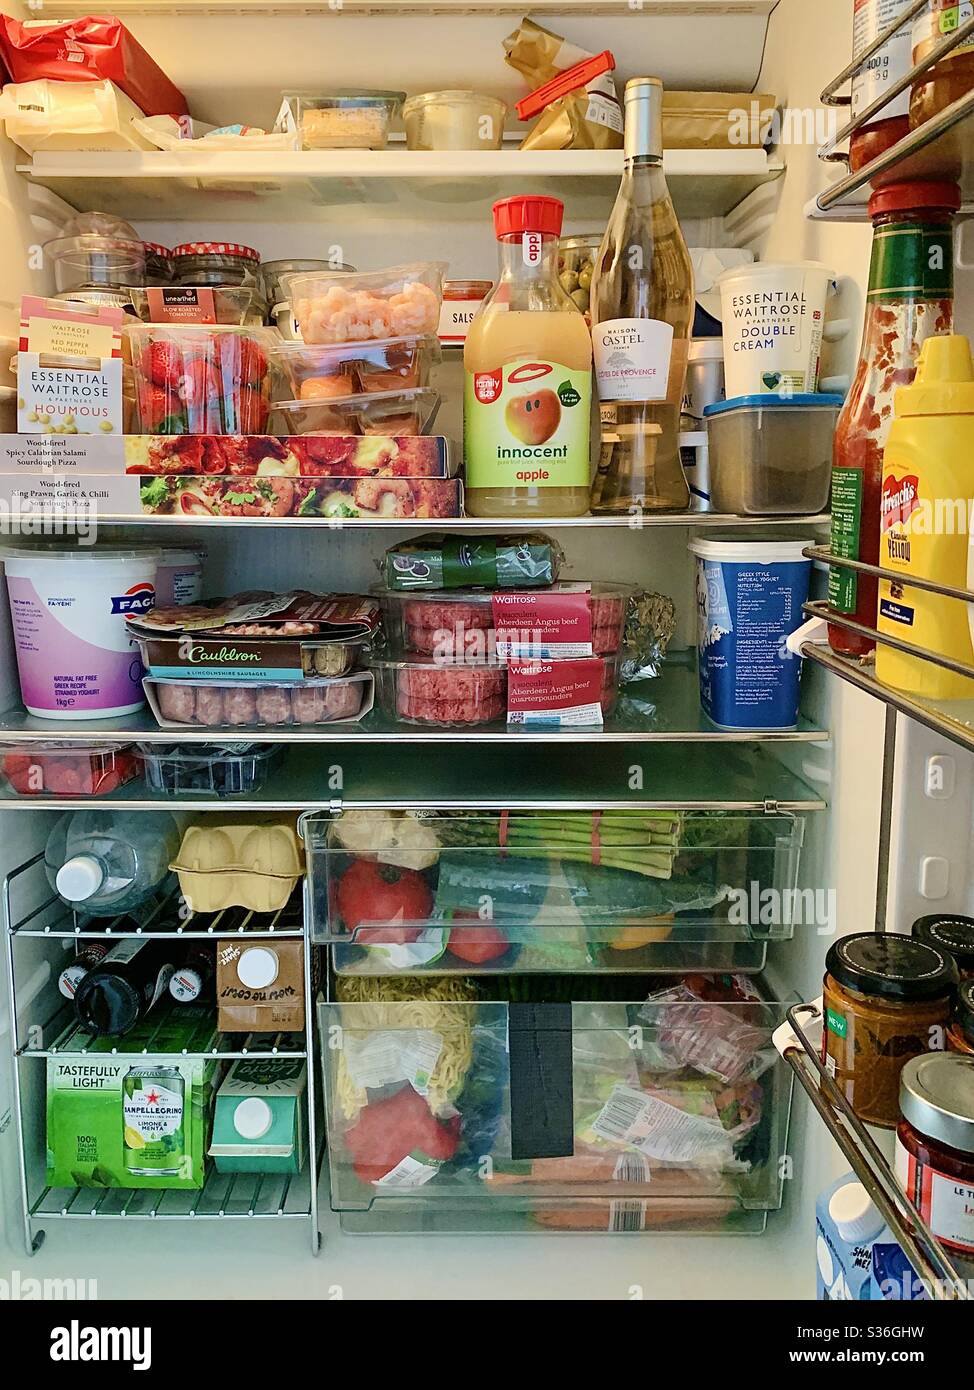 A fully stocked fridge Stock Photo